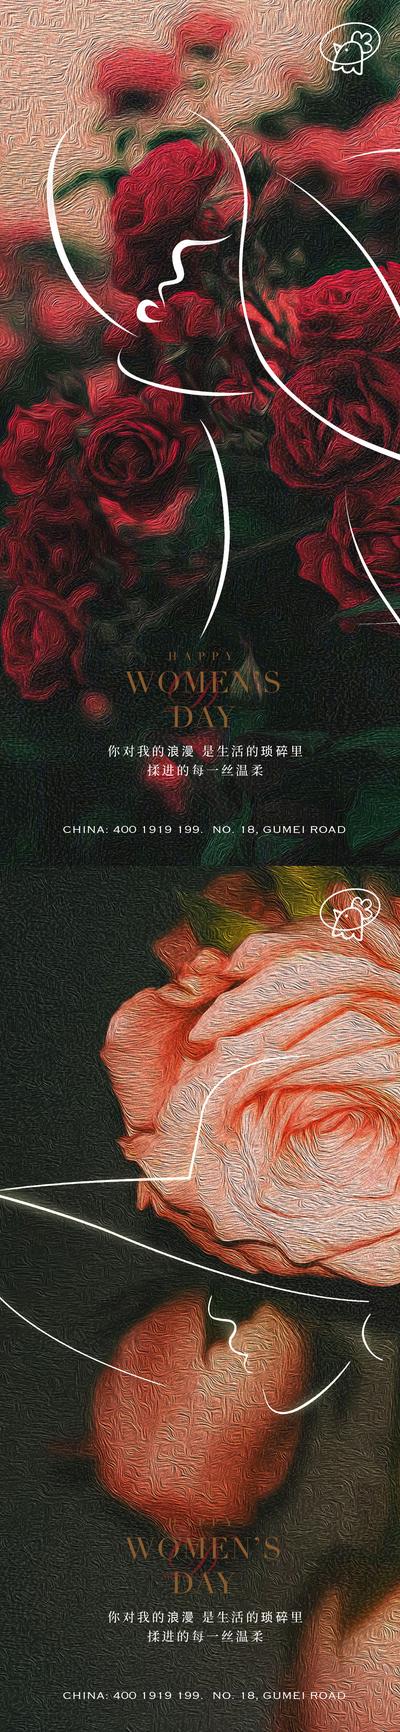 南门网 海报 妇女节 女神节 公历节日 玫瑰花